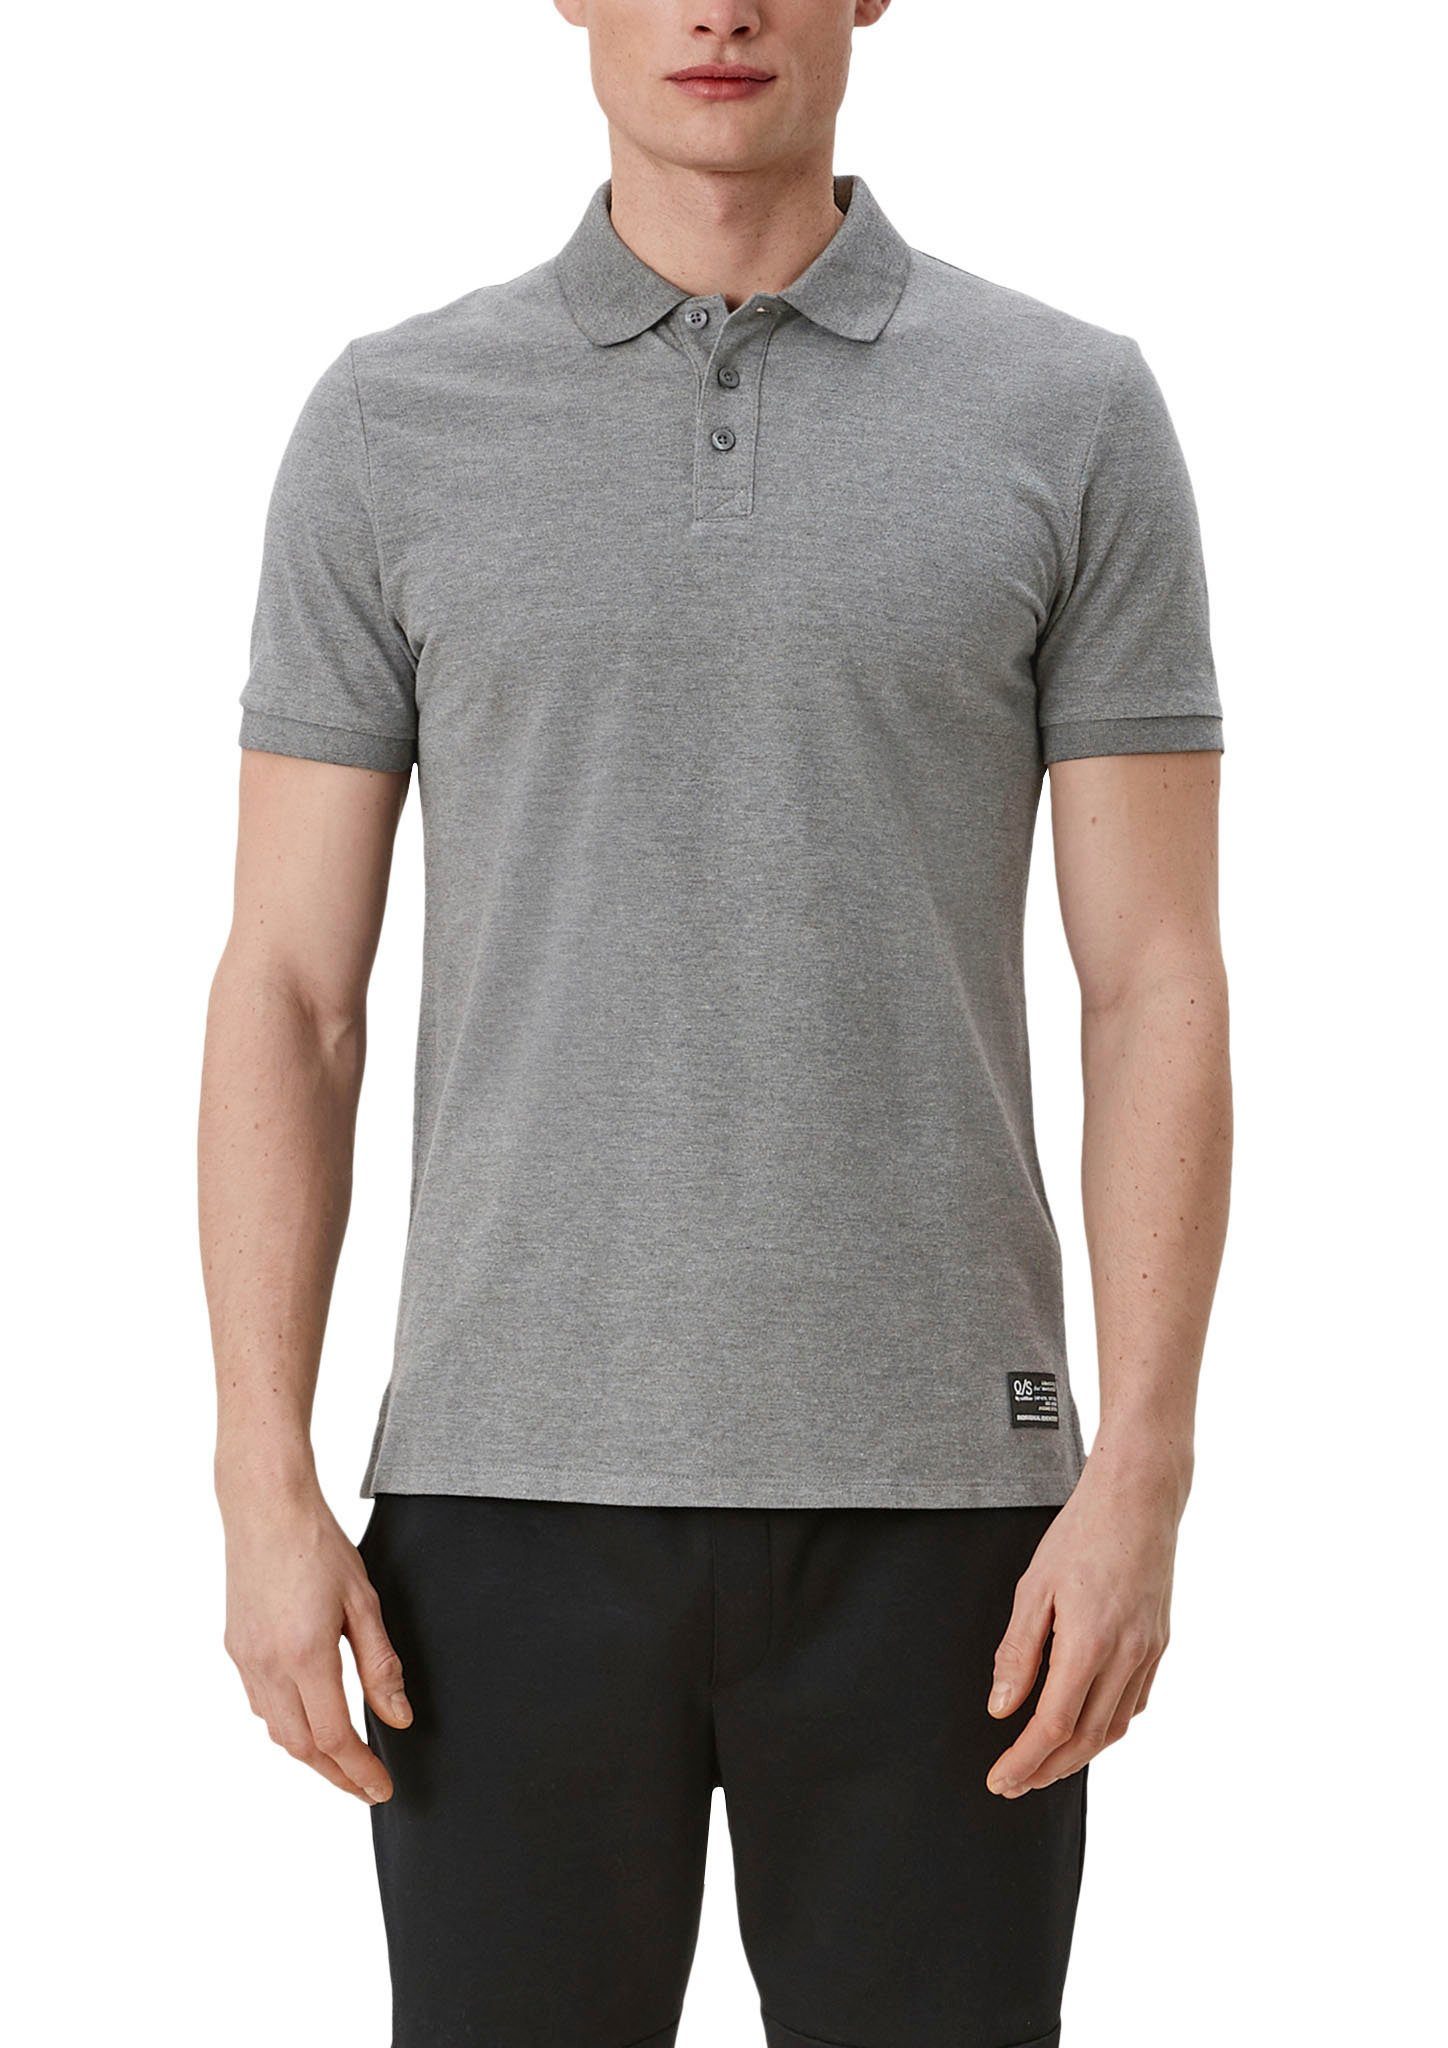 QS Poloshirt Einschnitte an den Seiten grey/black | Poloshirts